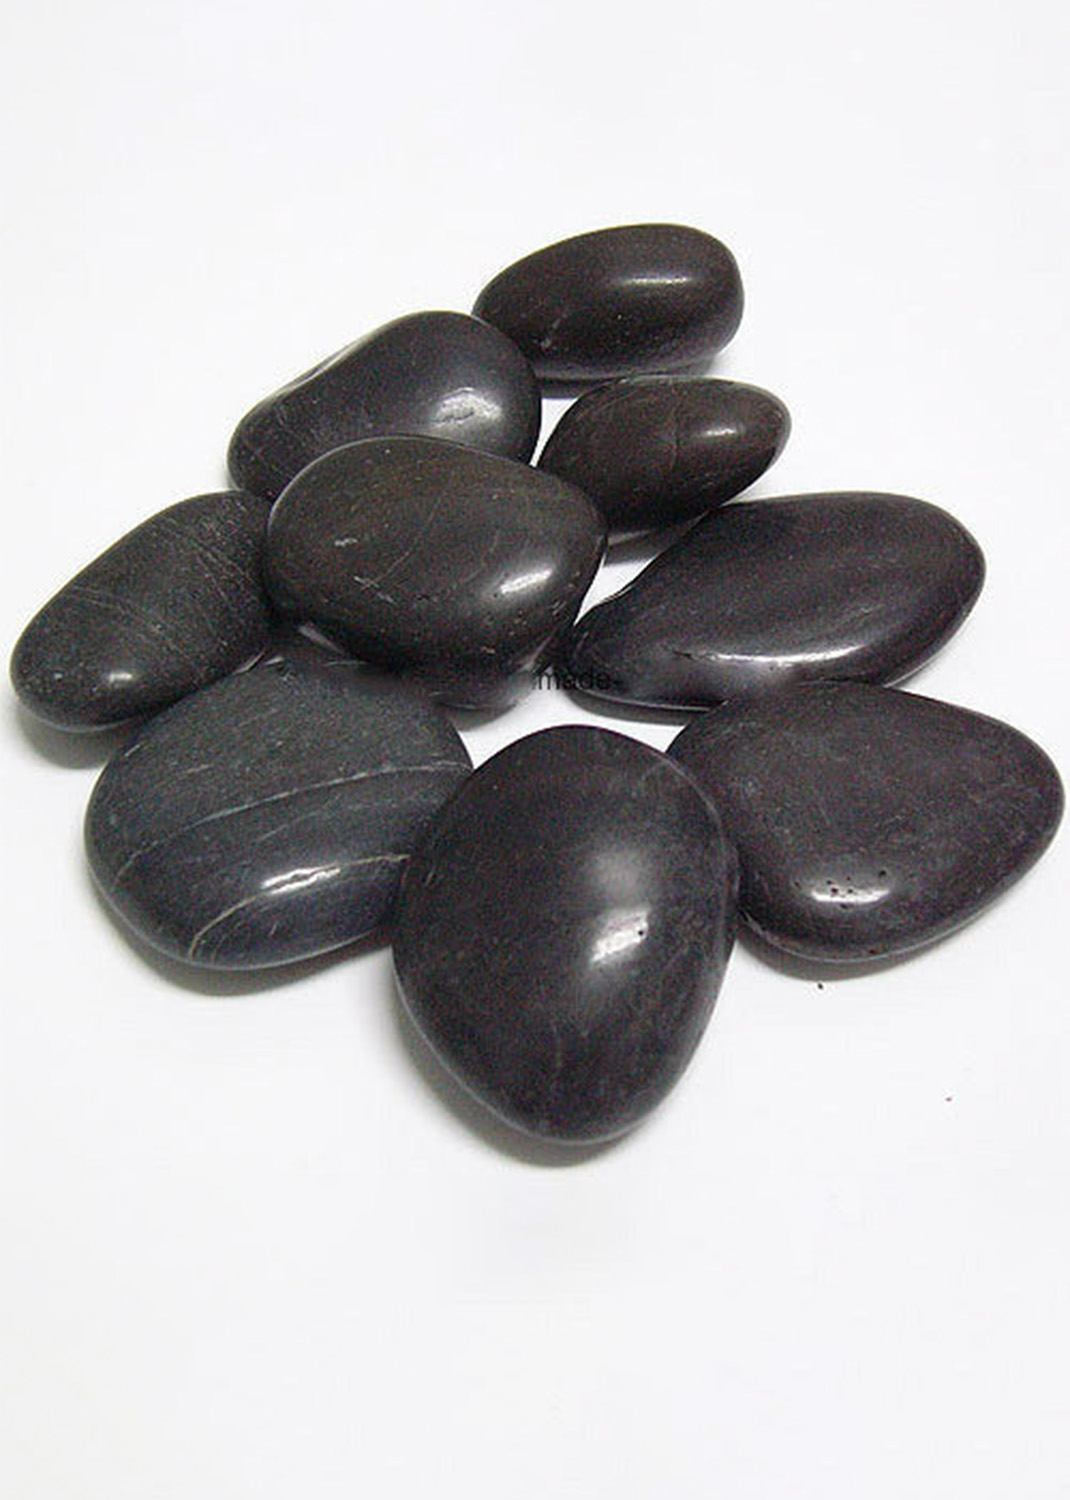 High Polished Black Pebbles 20-25 KG Bag 3-5cm